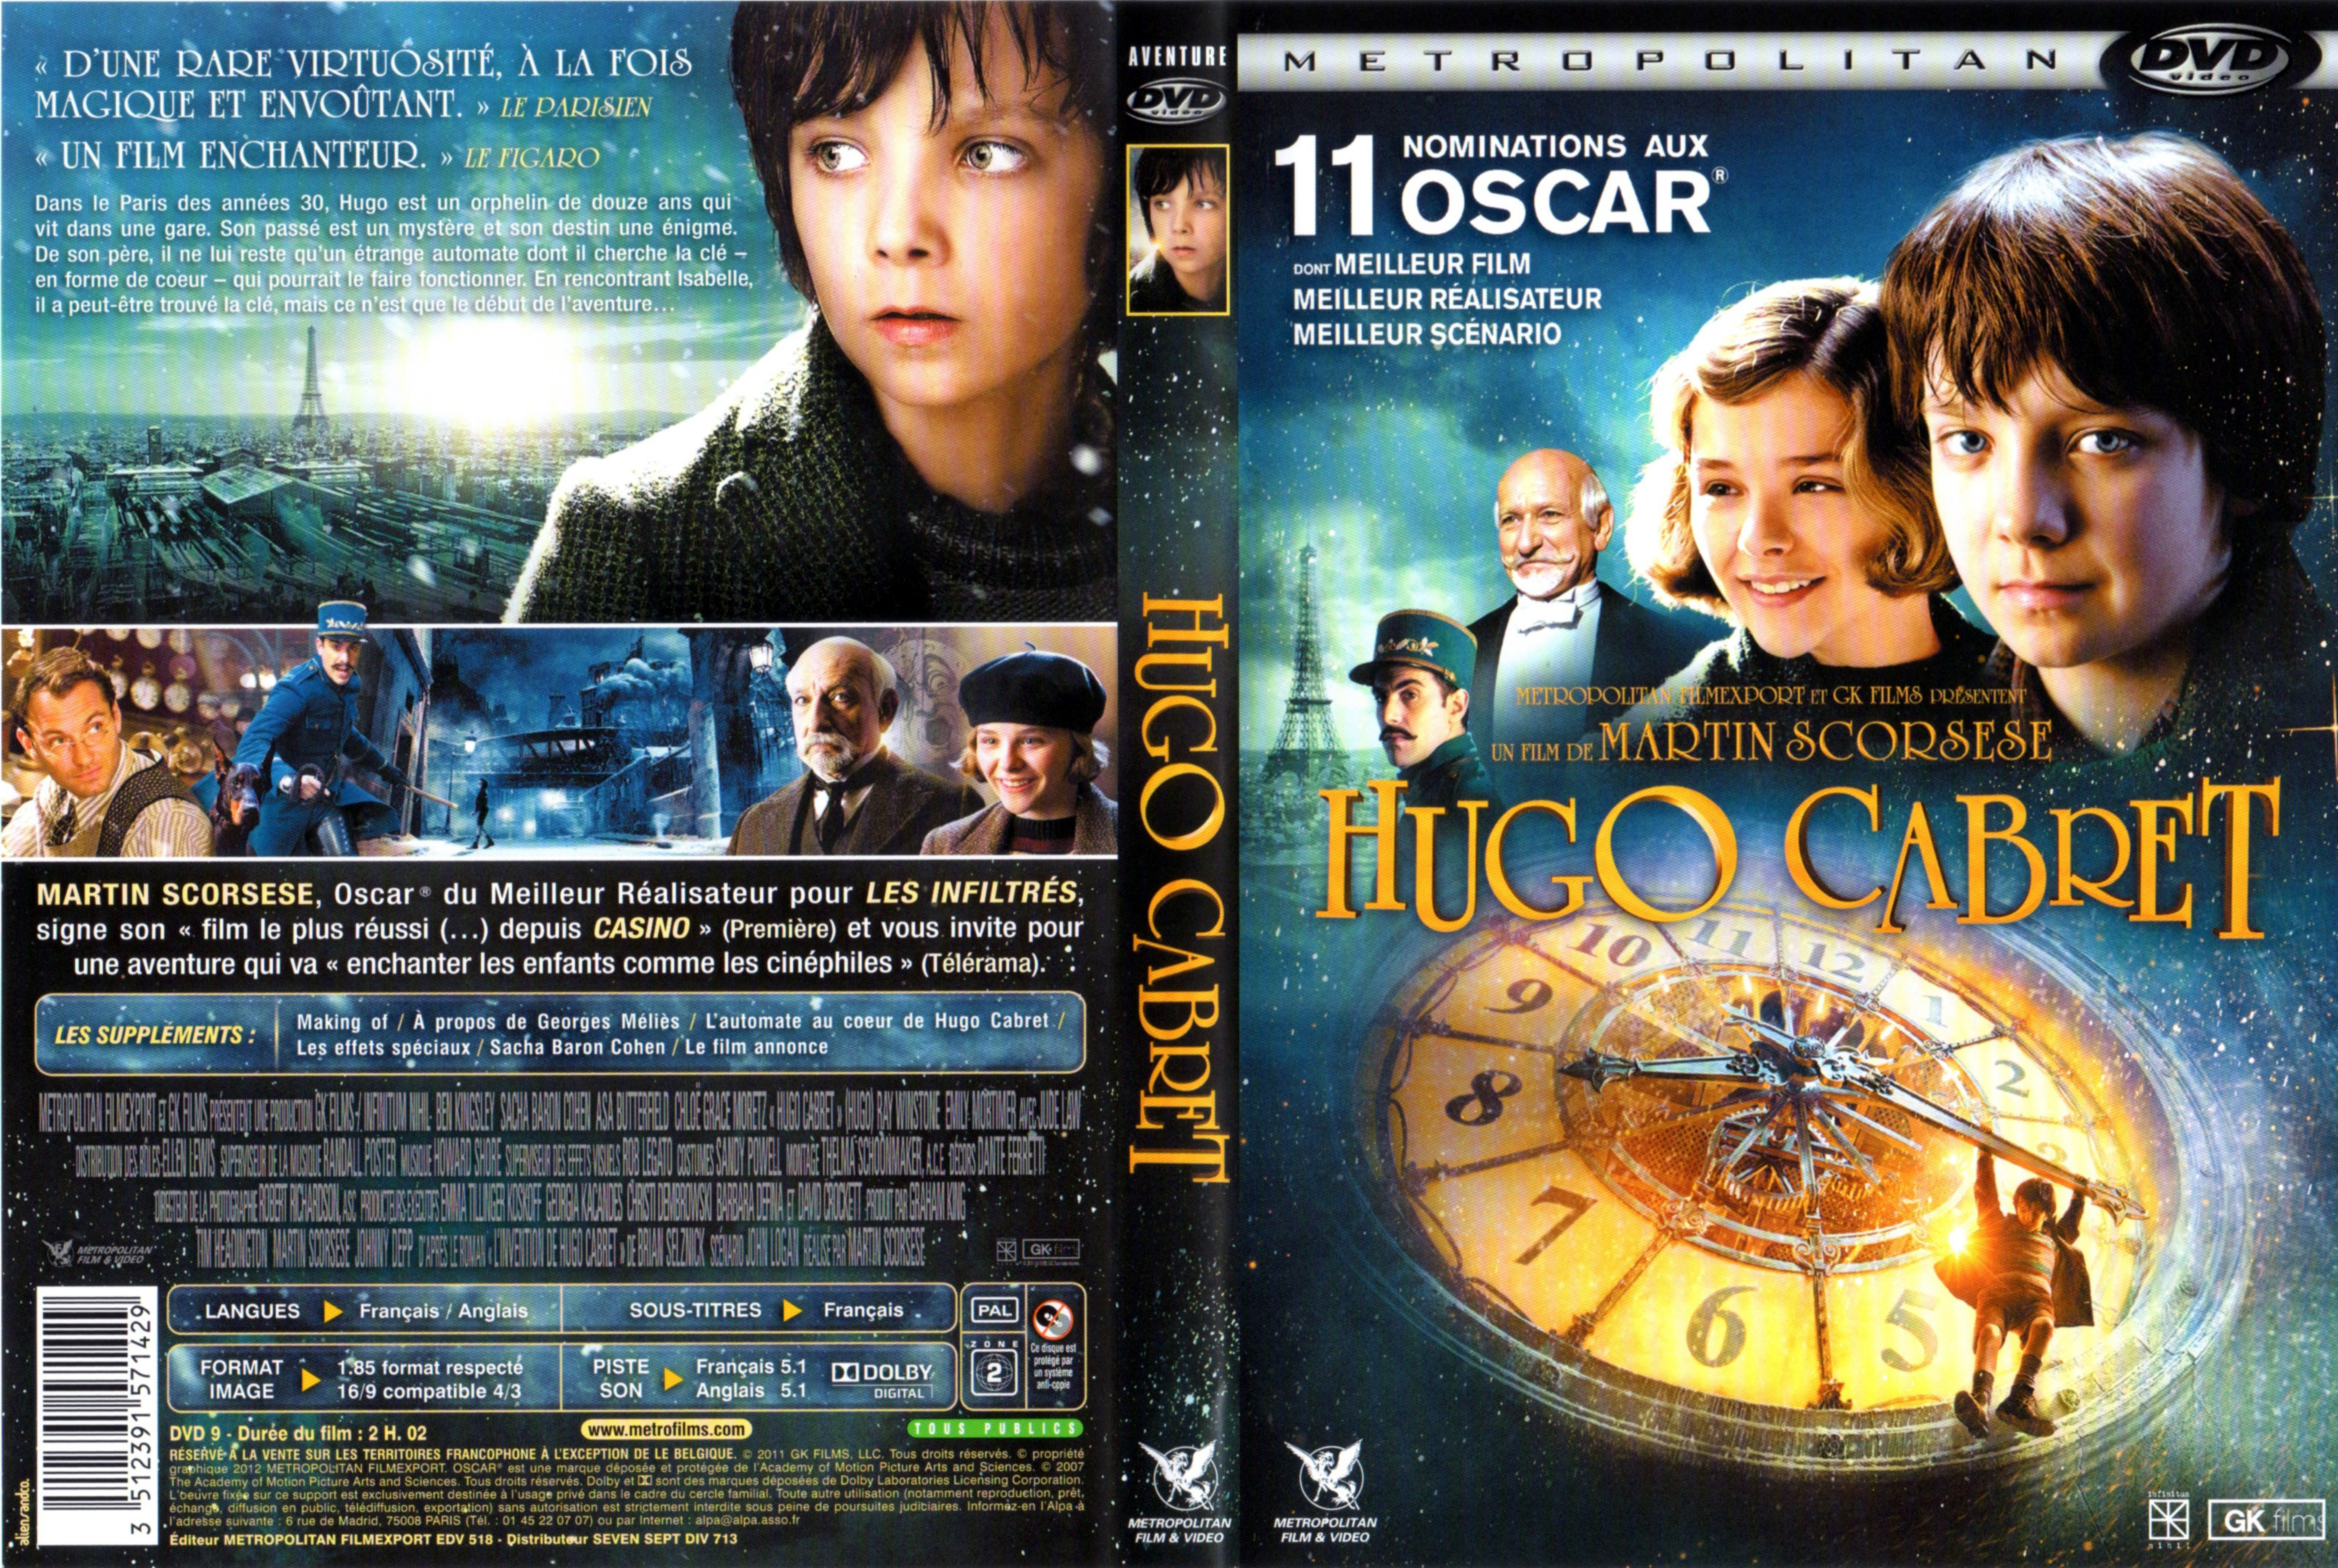 Jaquette DVD Hugo Cabret